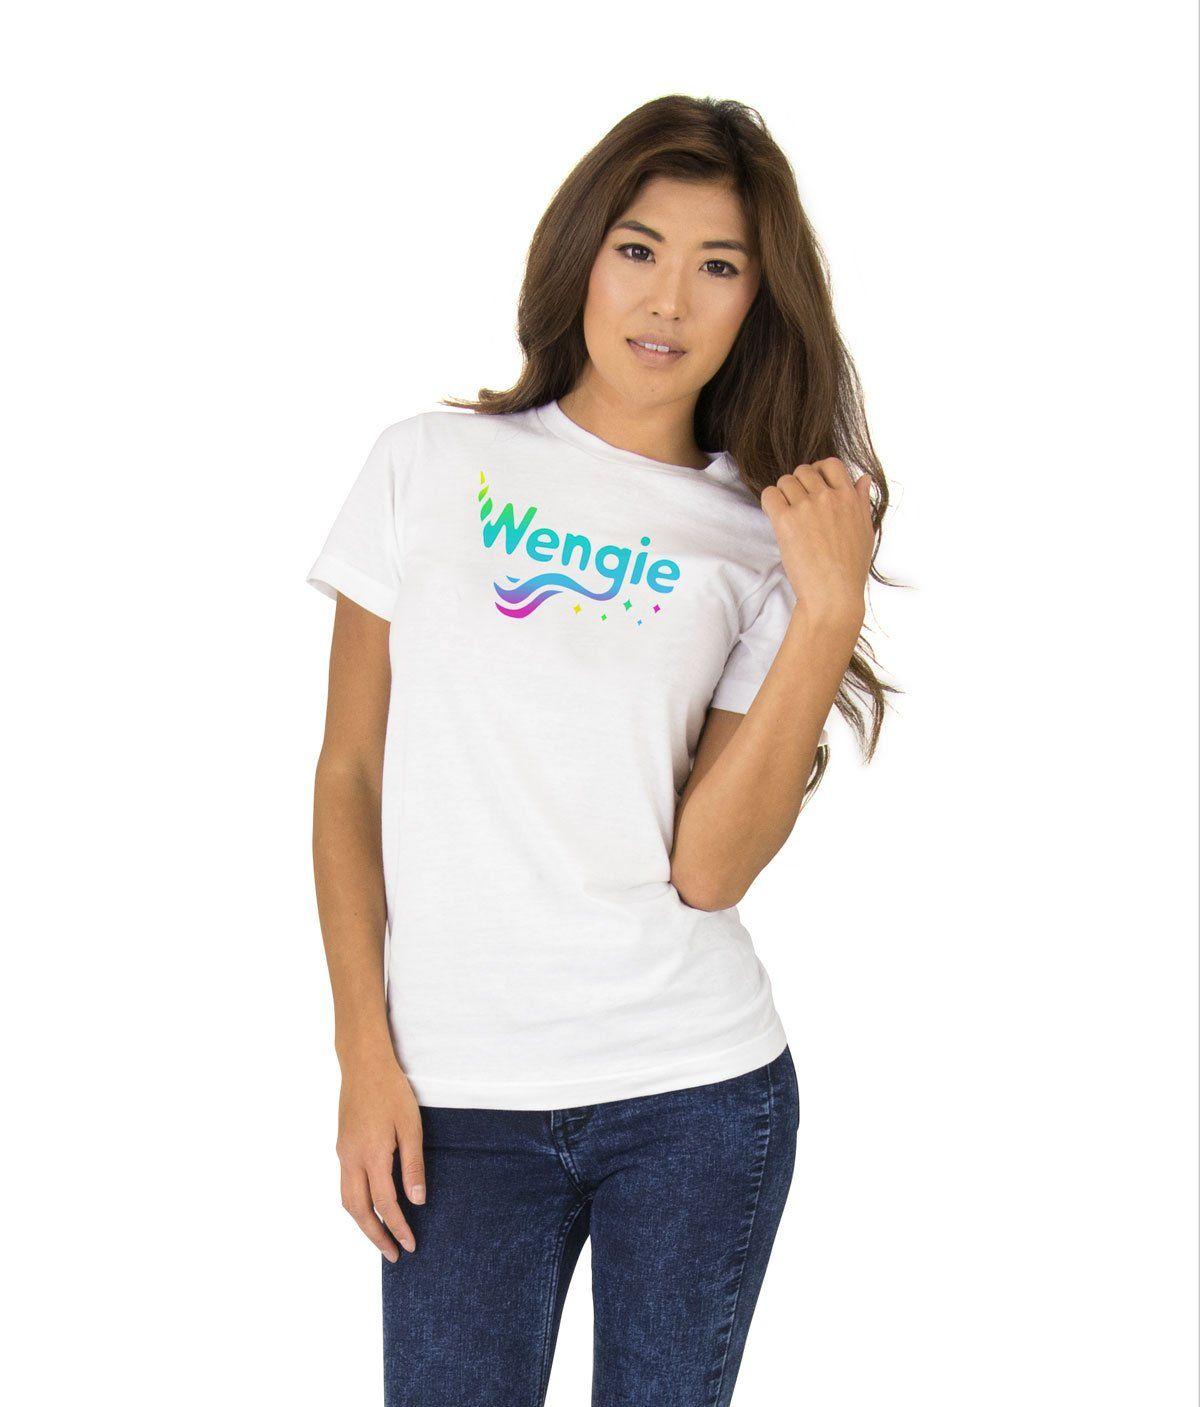 Wengie Logo - Wengie Logo